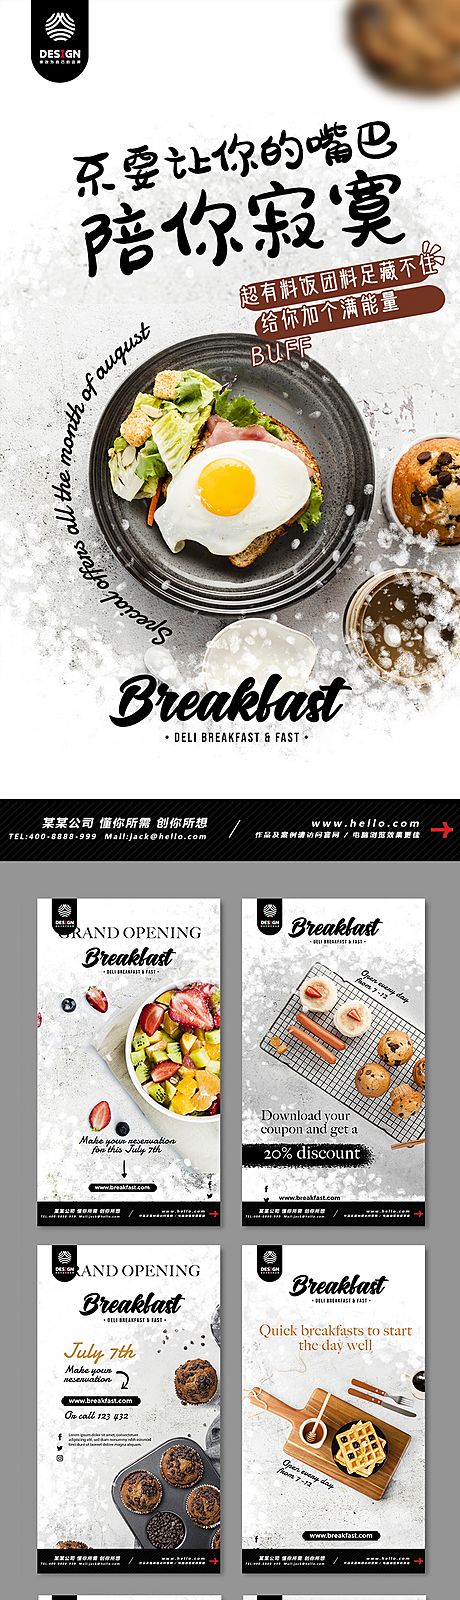 仙图网-健康 营养 早餐 西餐 煎蛋 美食